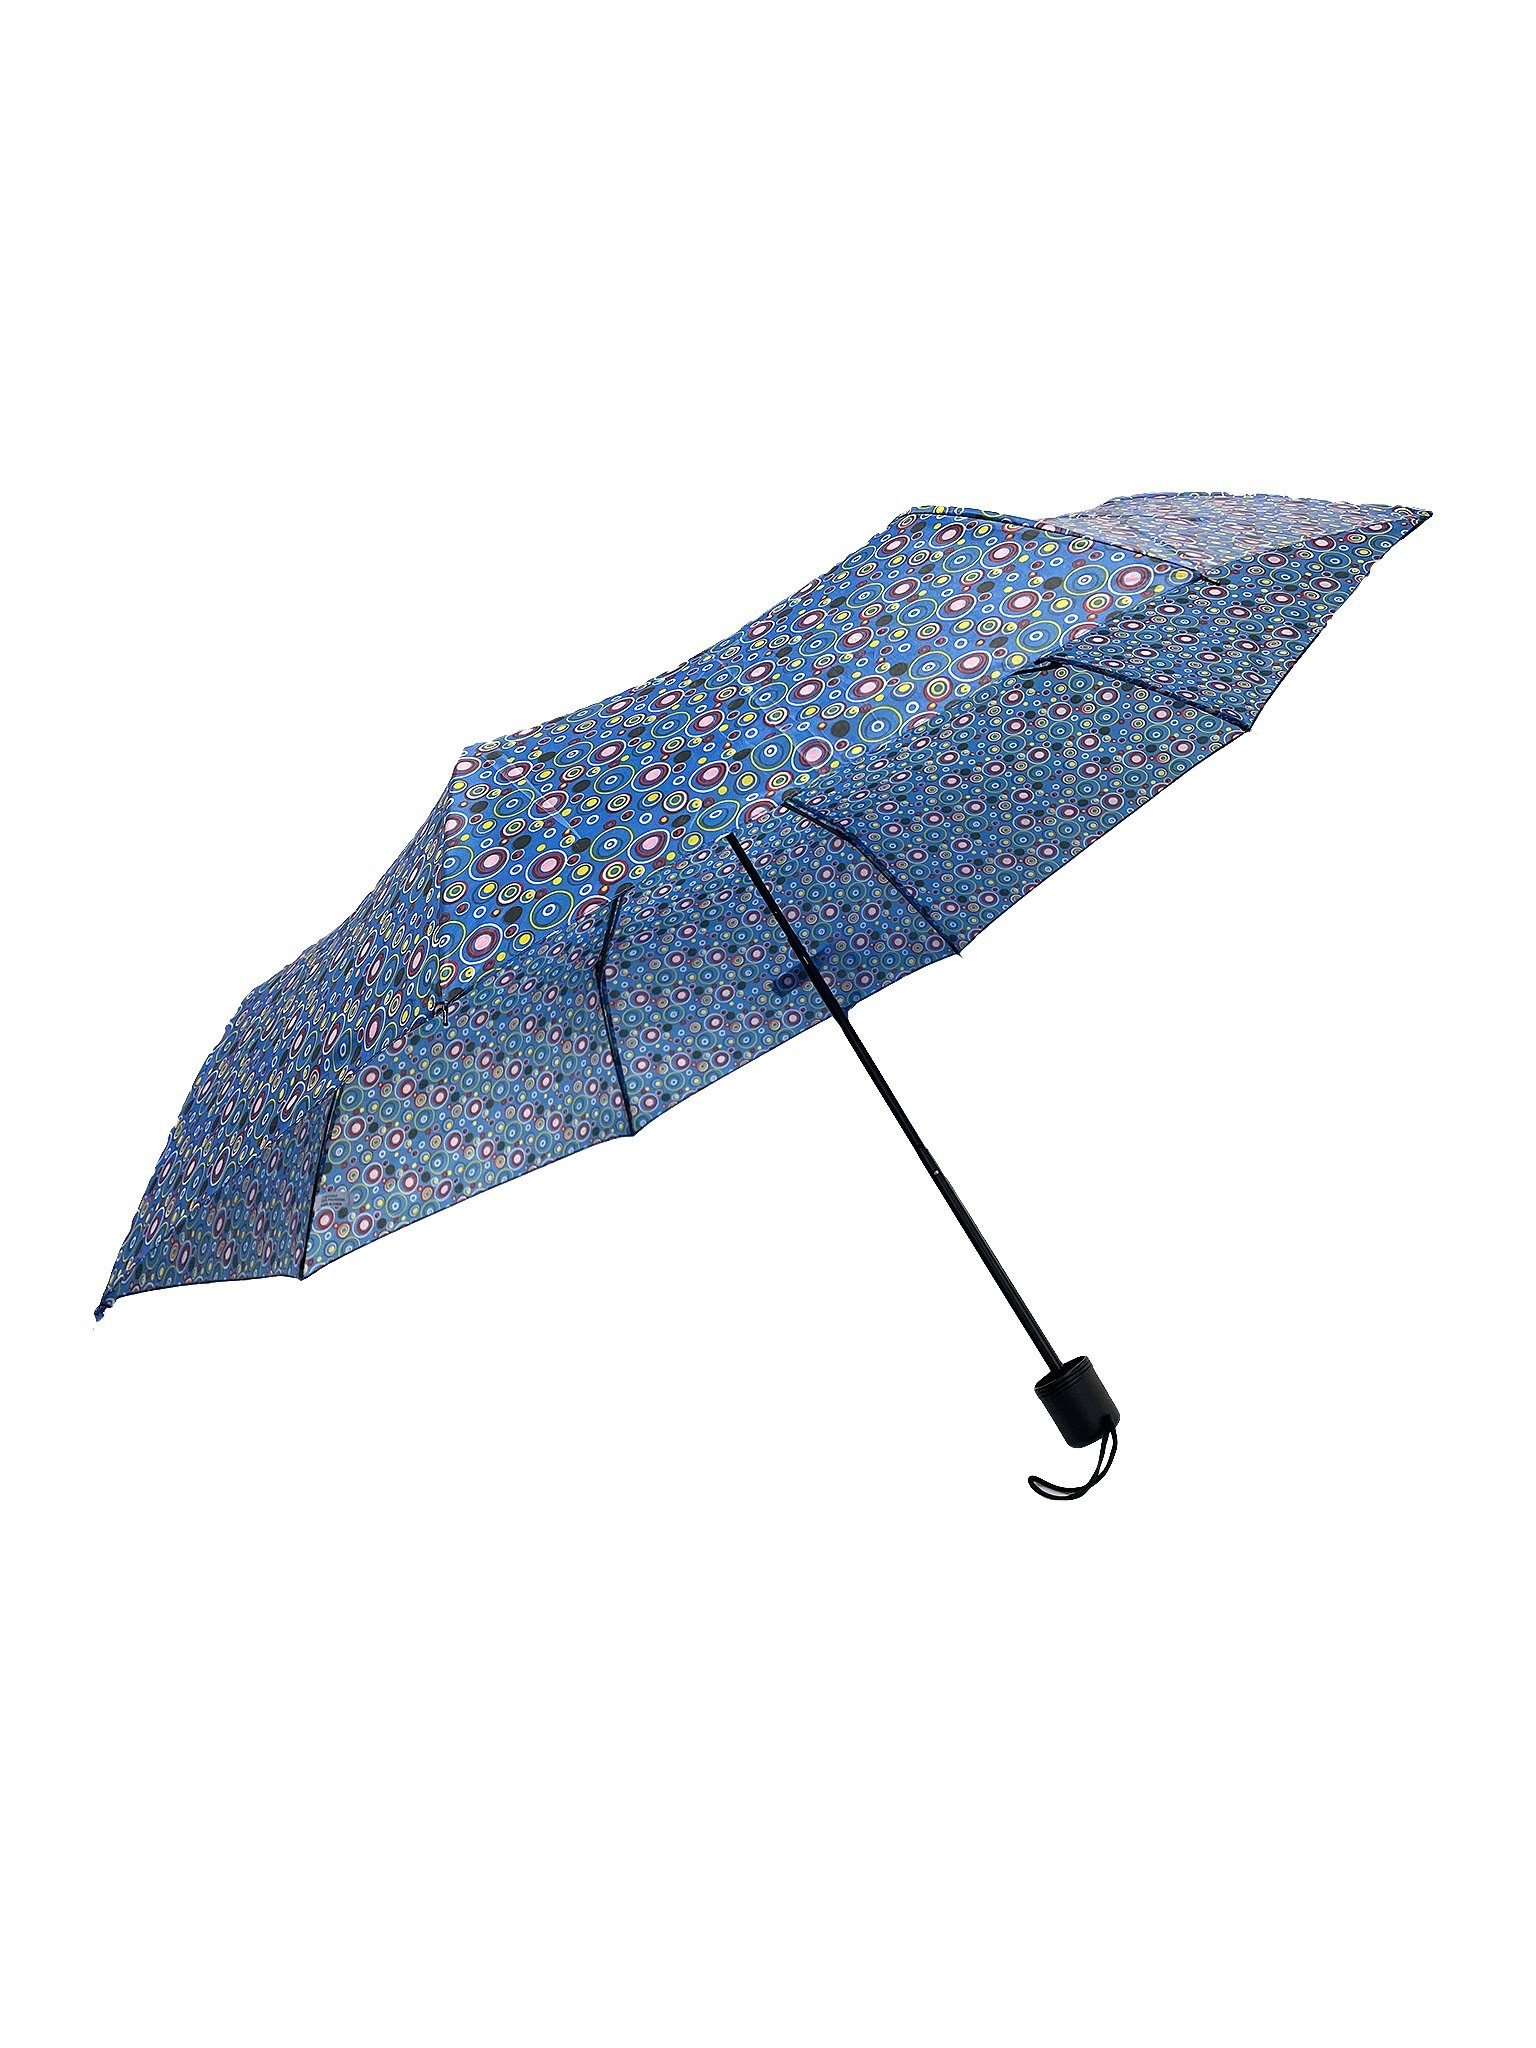 ANELY Taschenregenschirm Kleiner Regenschirm Paris Gemustert Taschenschirm, 6746 in Blau-Grün